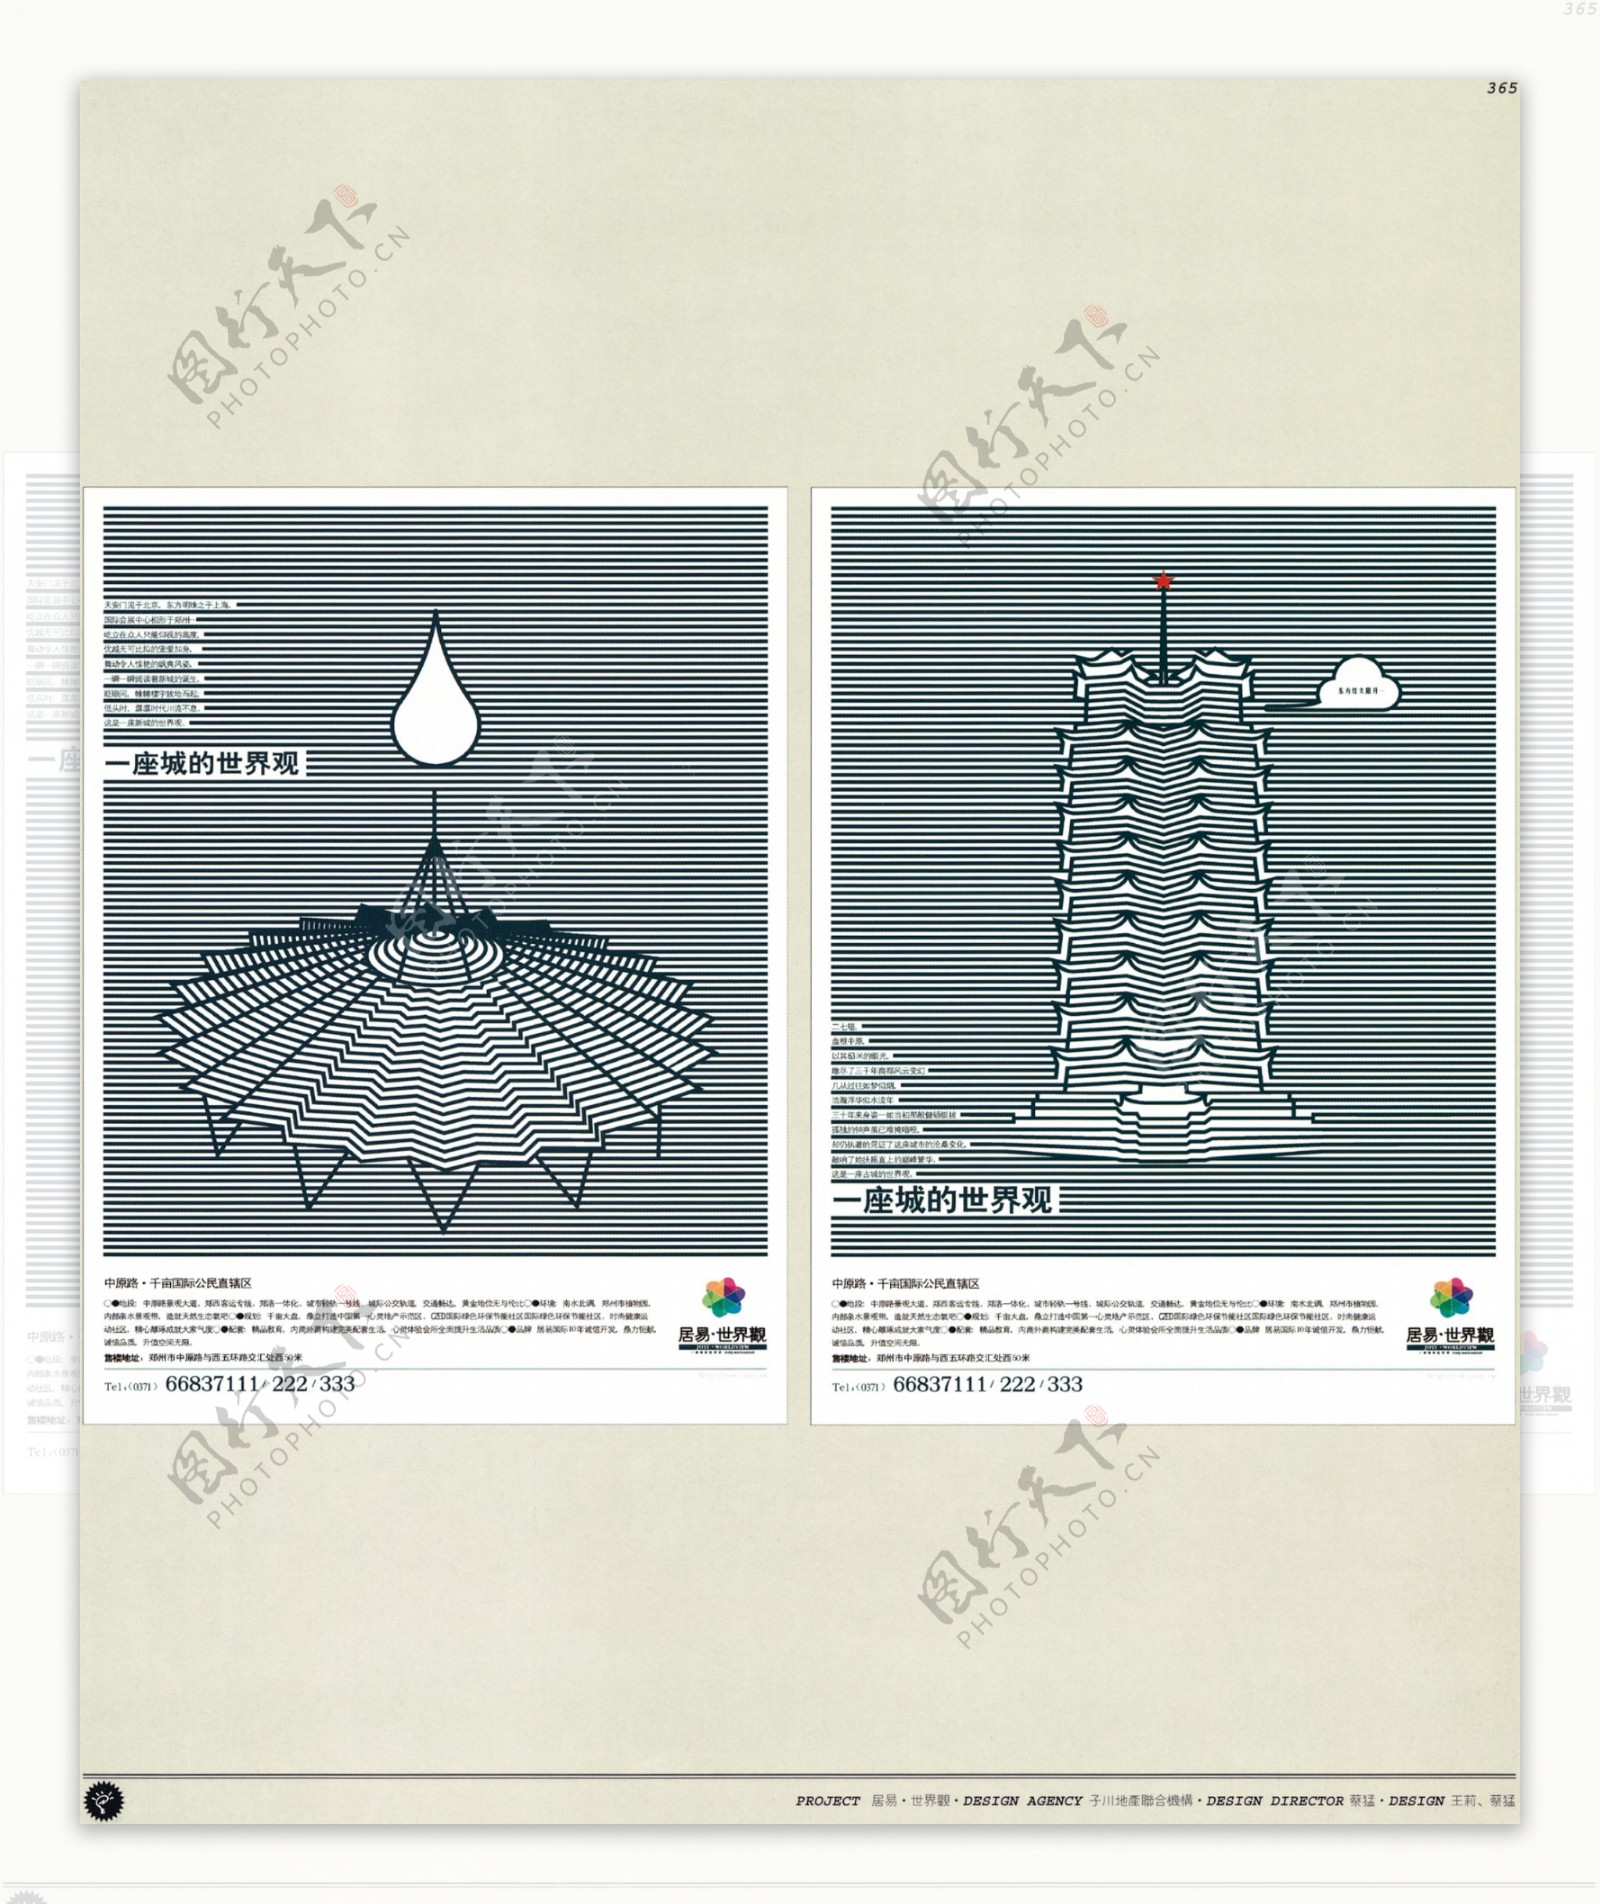 中国房地产广告年鉴第二册创意设计0347